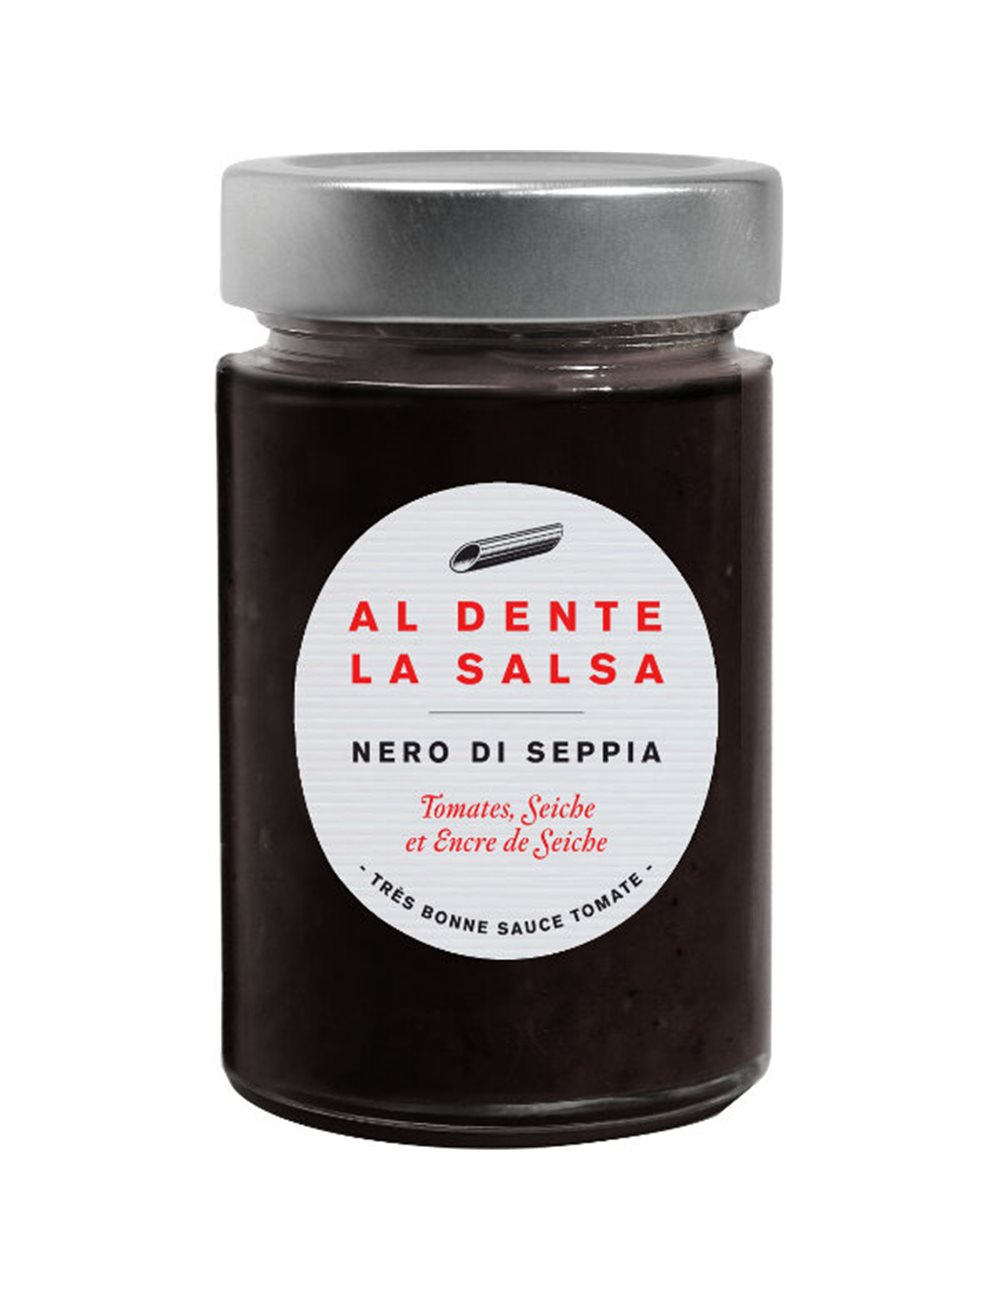 Tomatensaus Nero di Seppia (inktvis) 200g